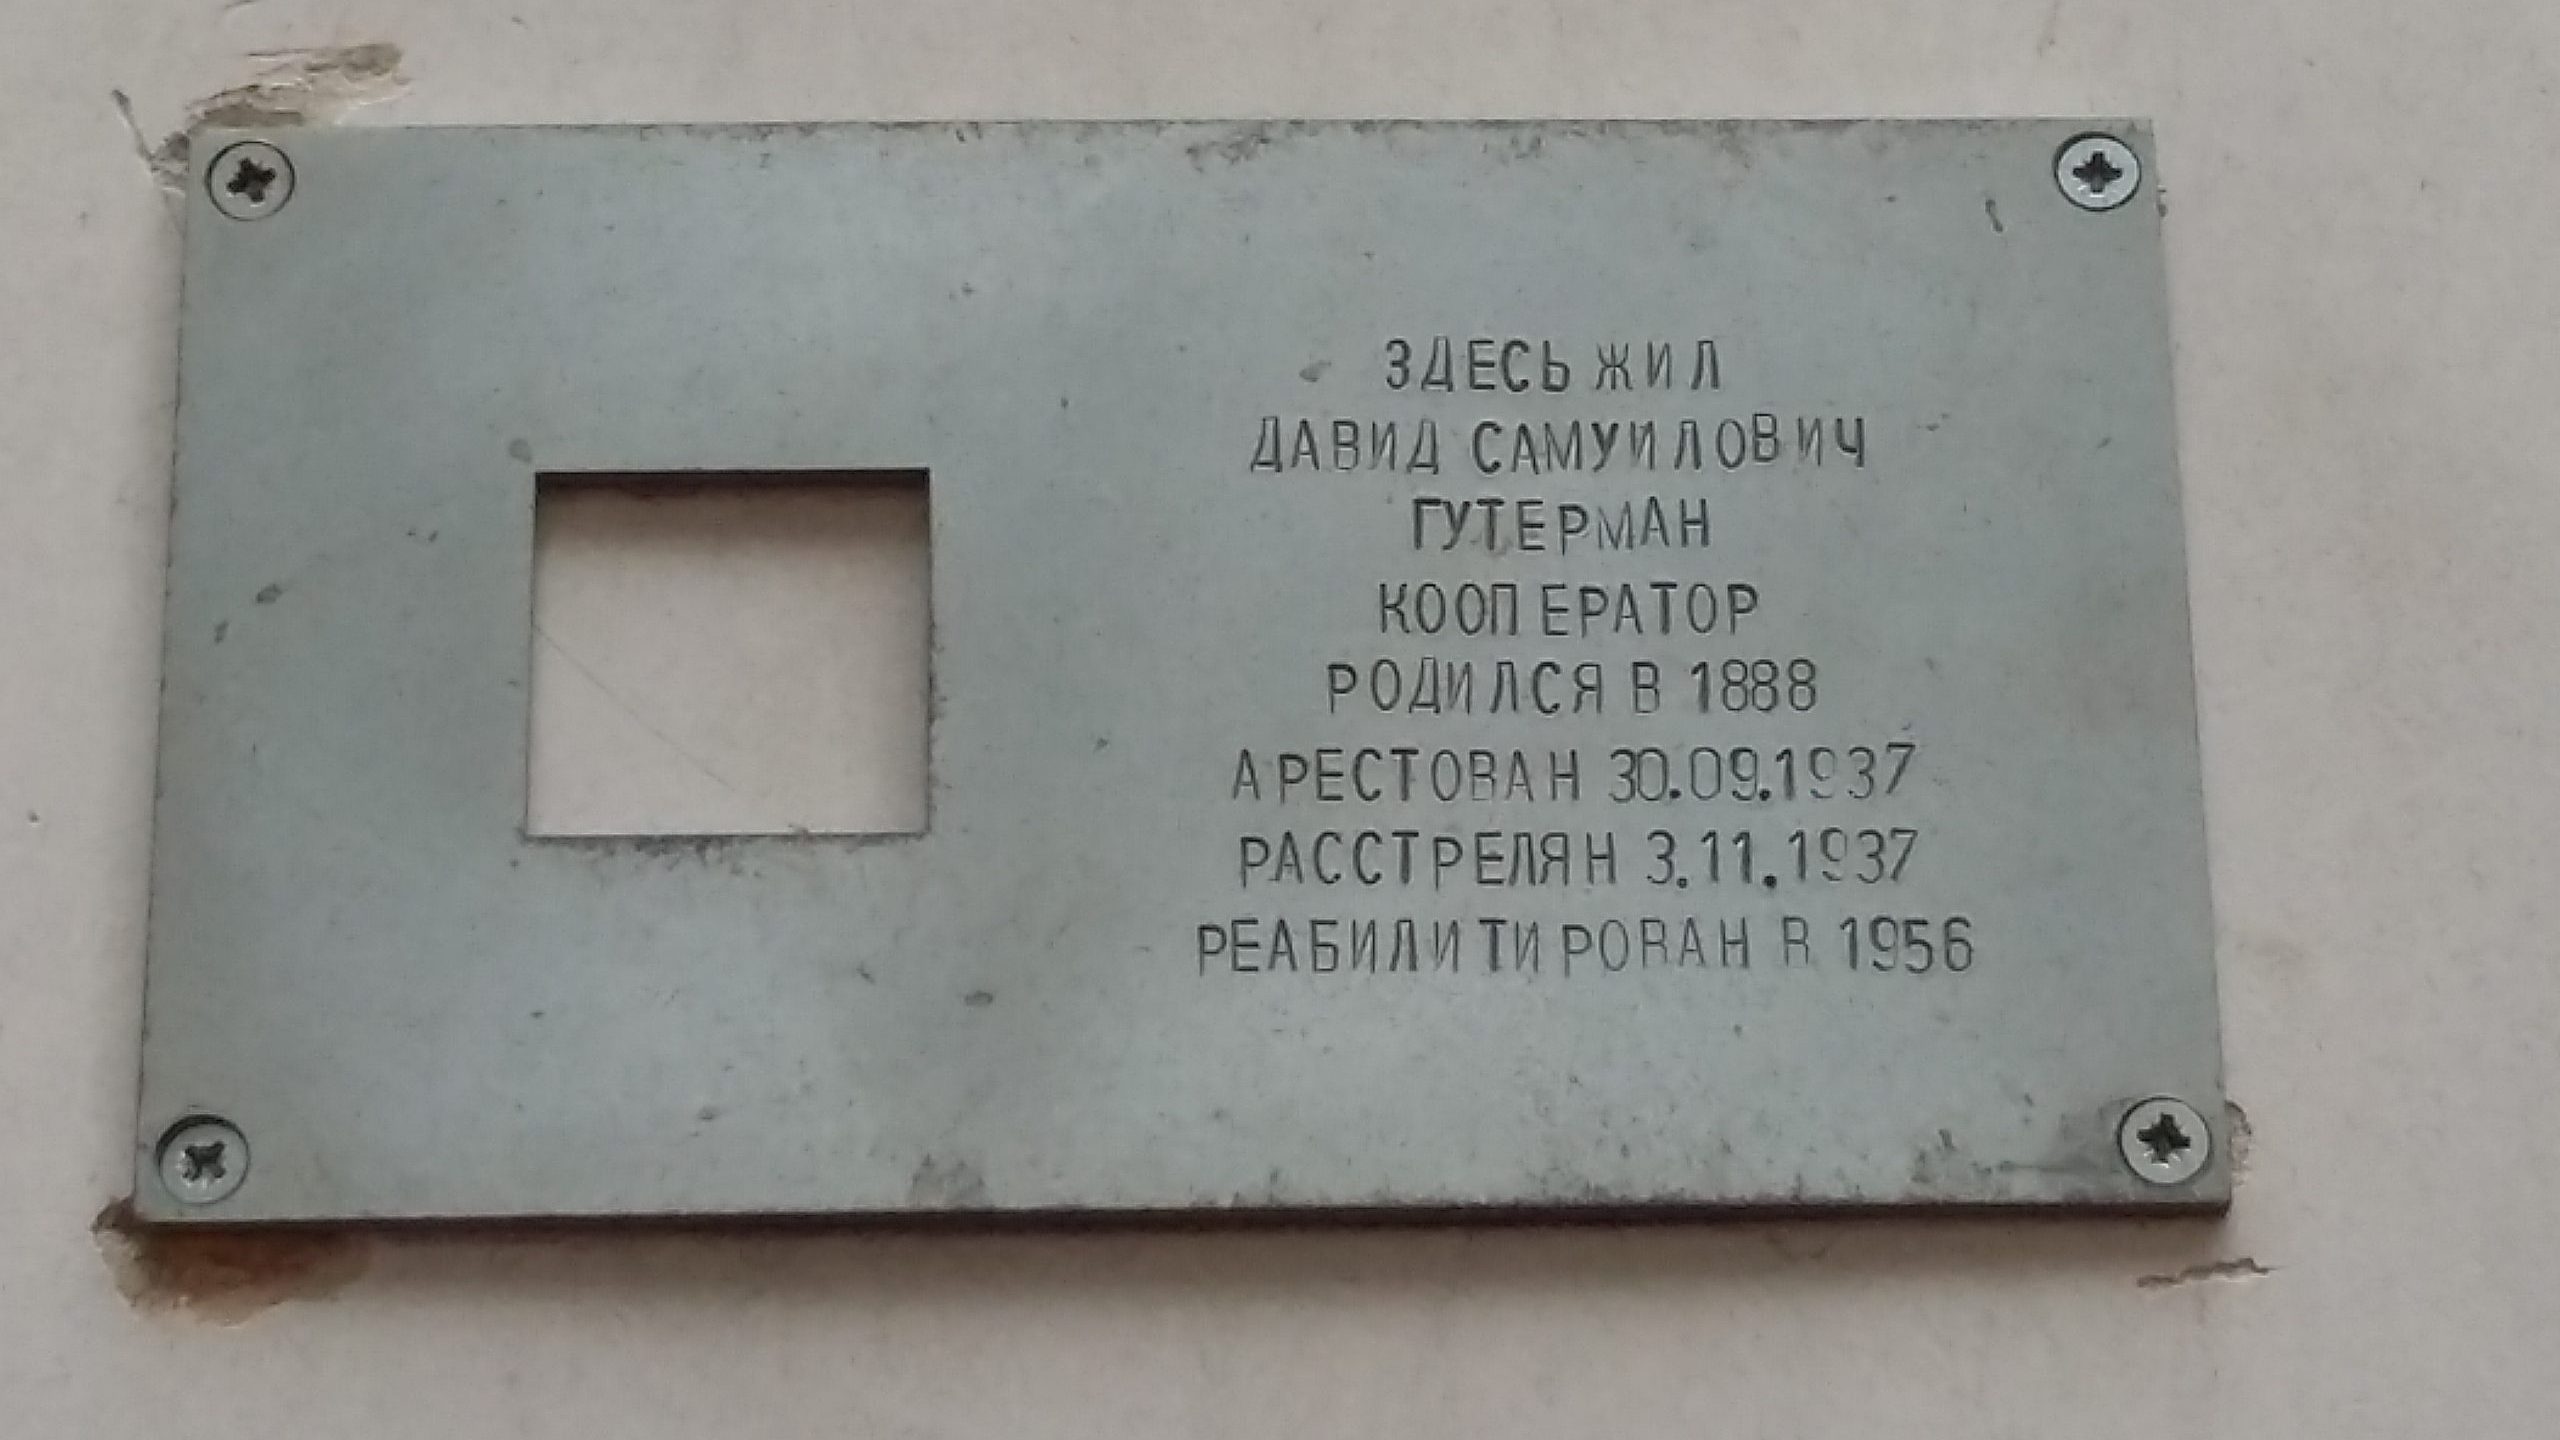 En metallskylt med ingraverad text på ryska.